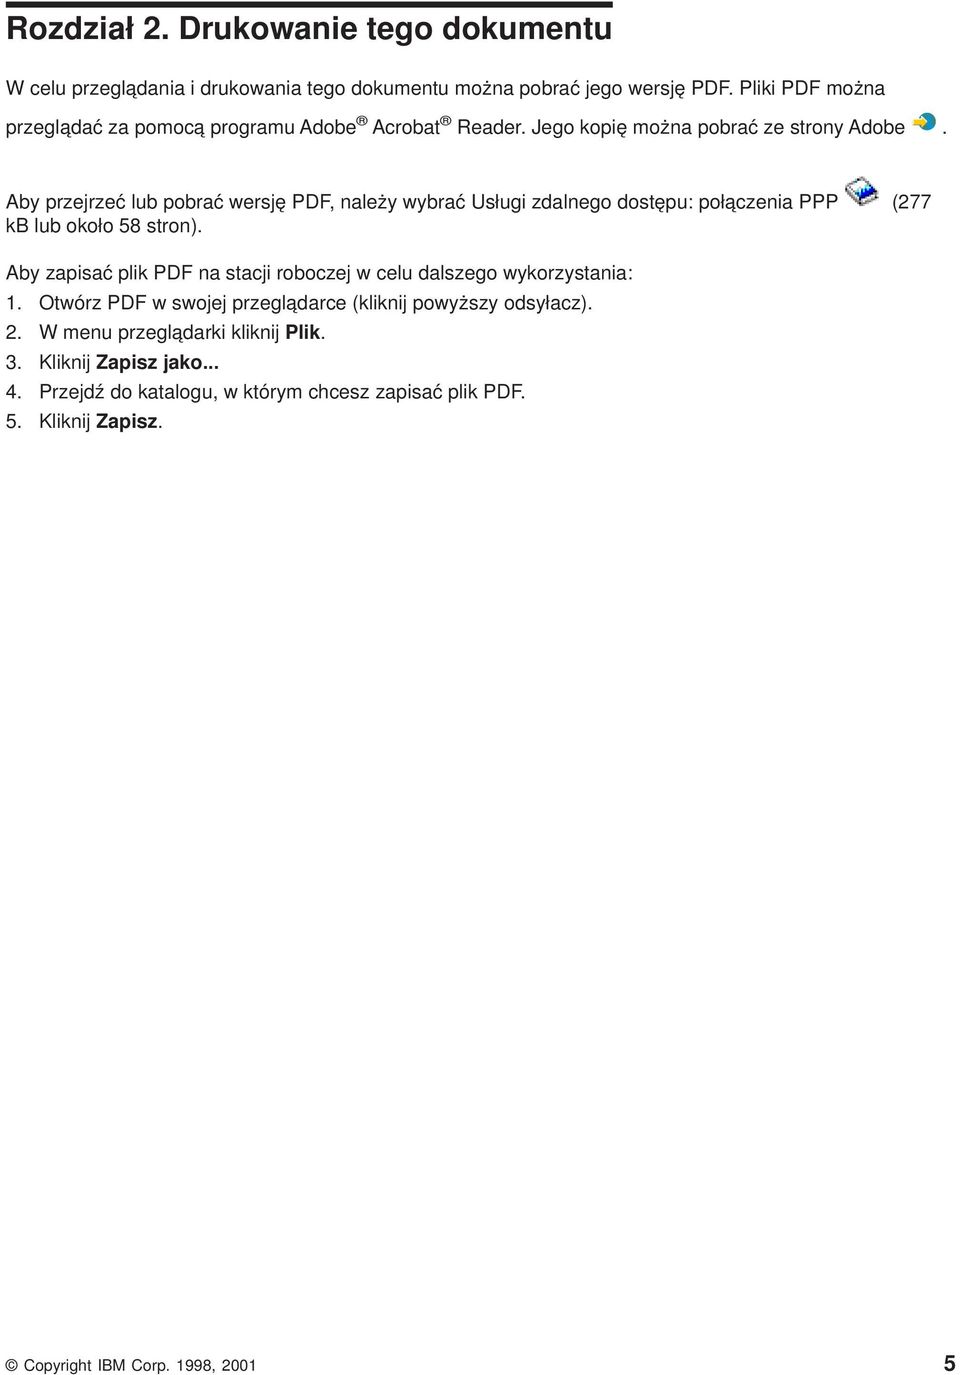 Aby przejrzeć lub pobrać wersję PDF, należy wybrać Usługi zdalnego dostępu: połączenia PPP (277 kb lub około 58 stron).